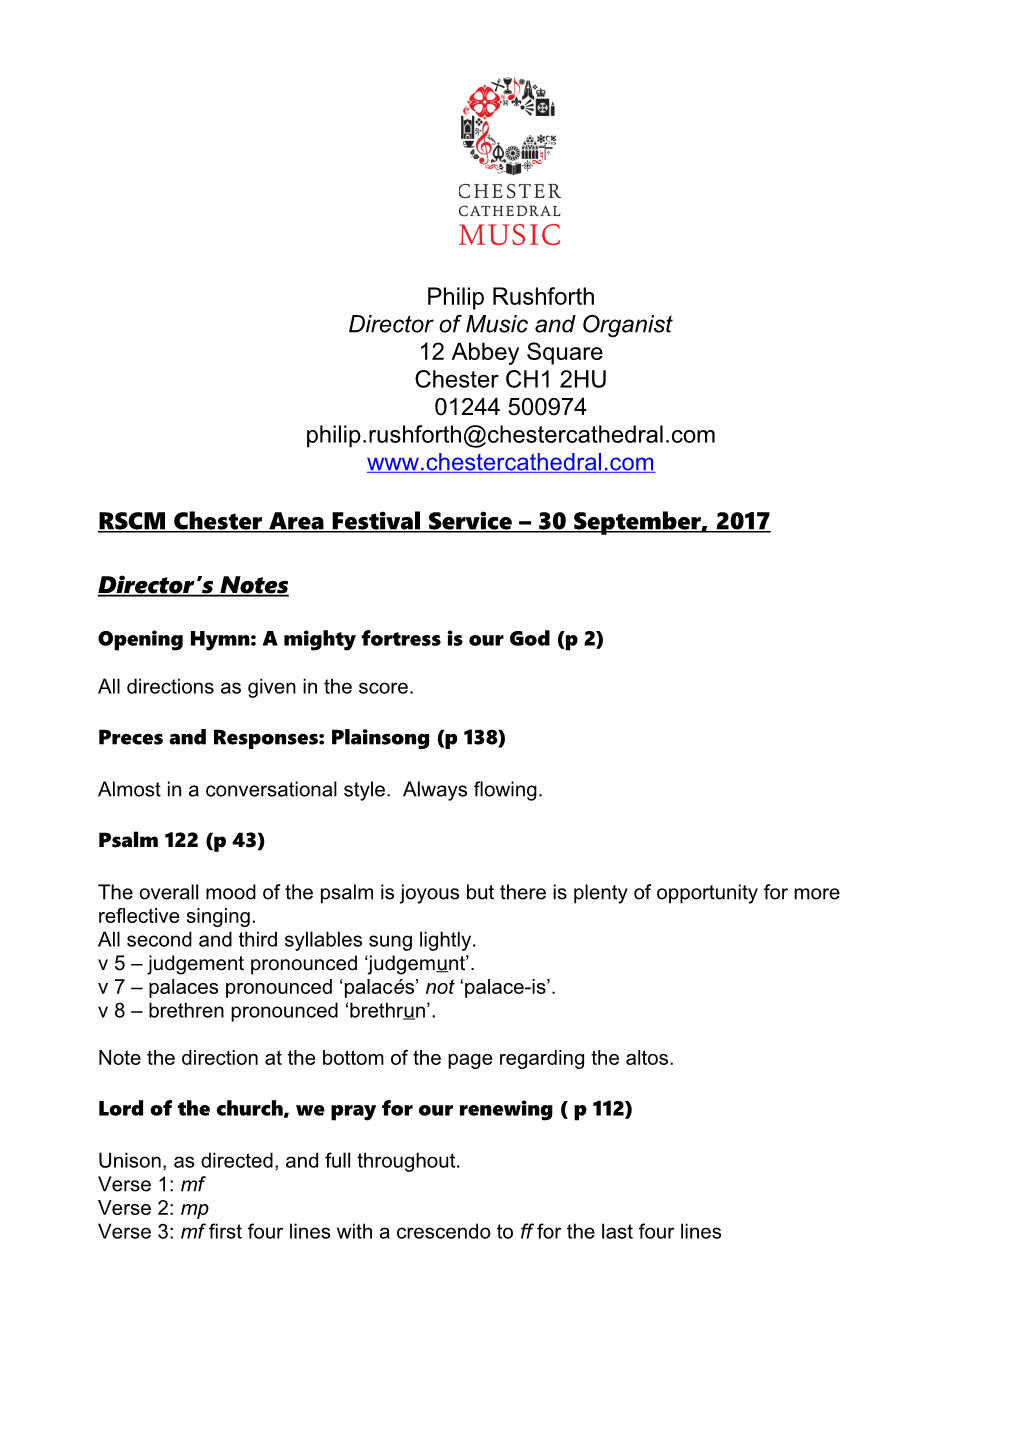 RSCM Chester Area Festival Service 30 September, 2017